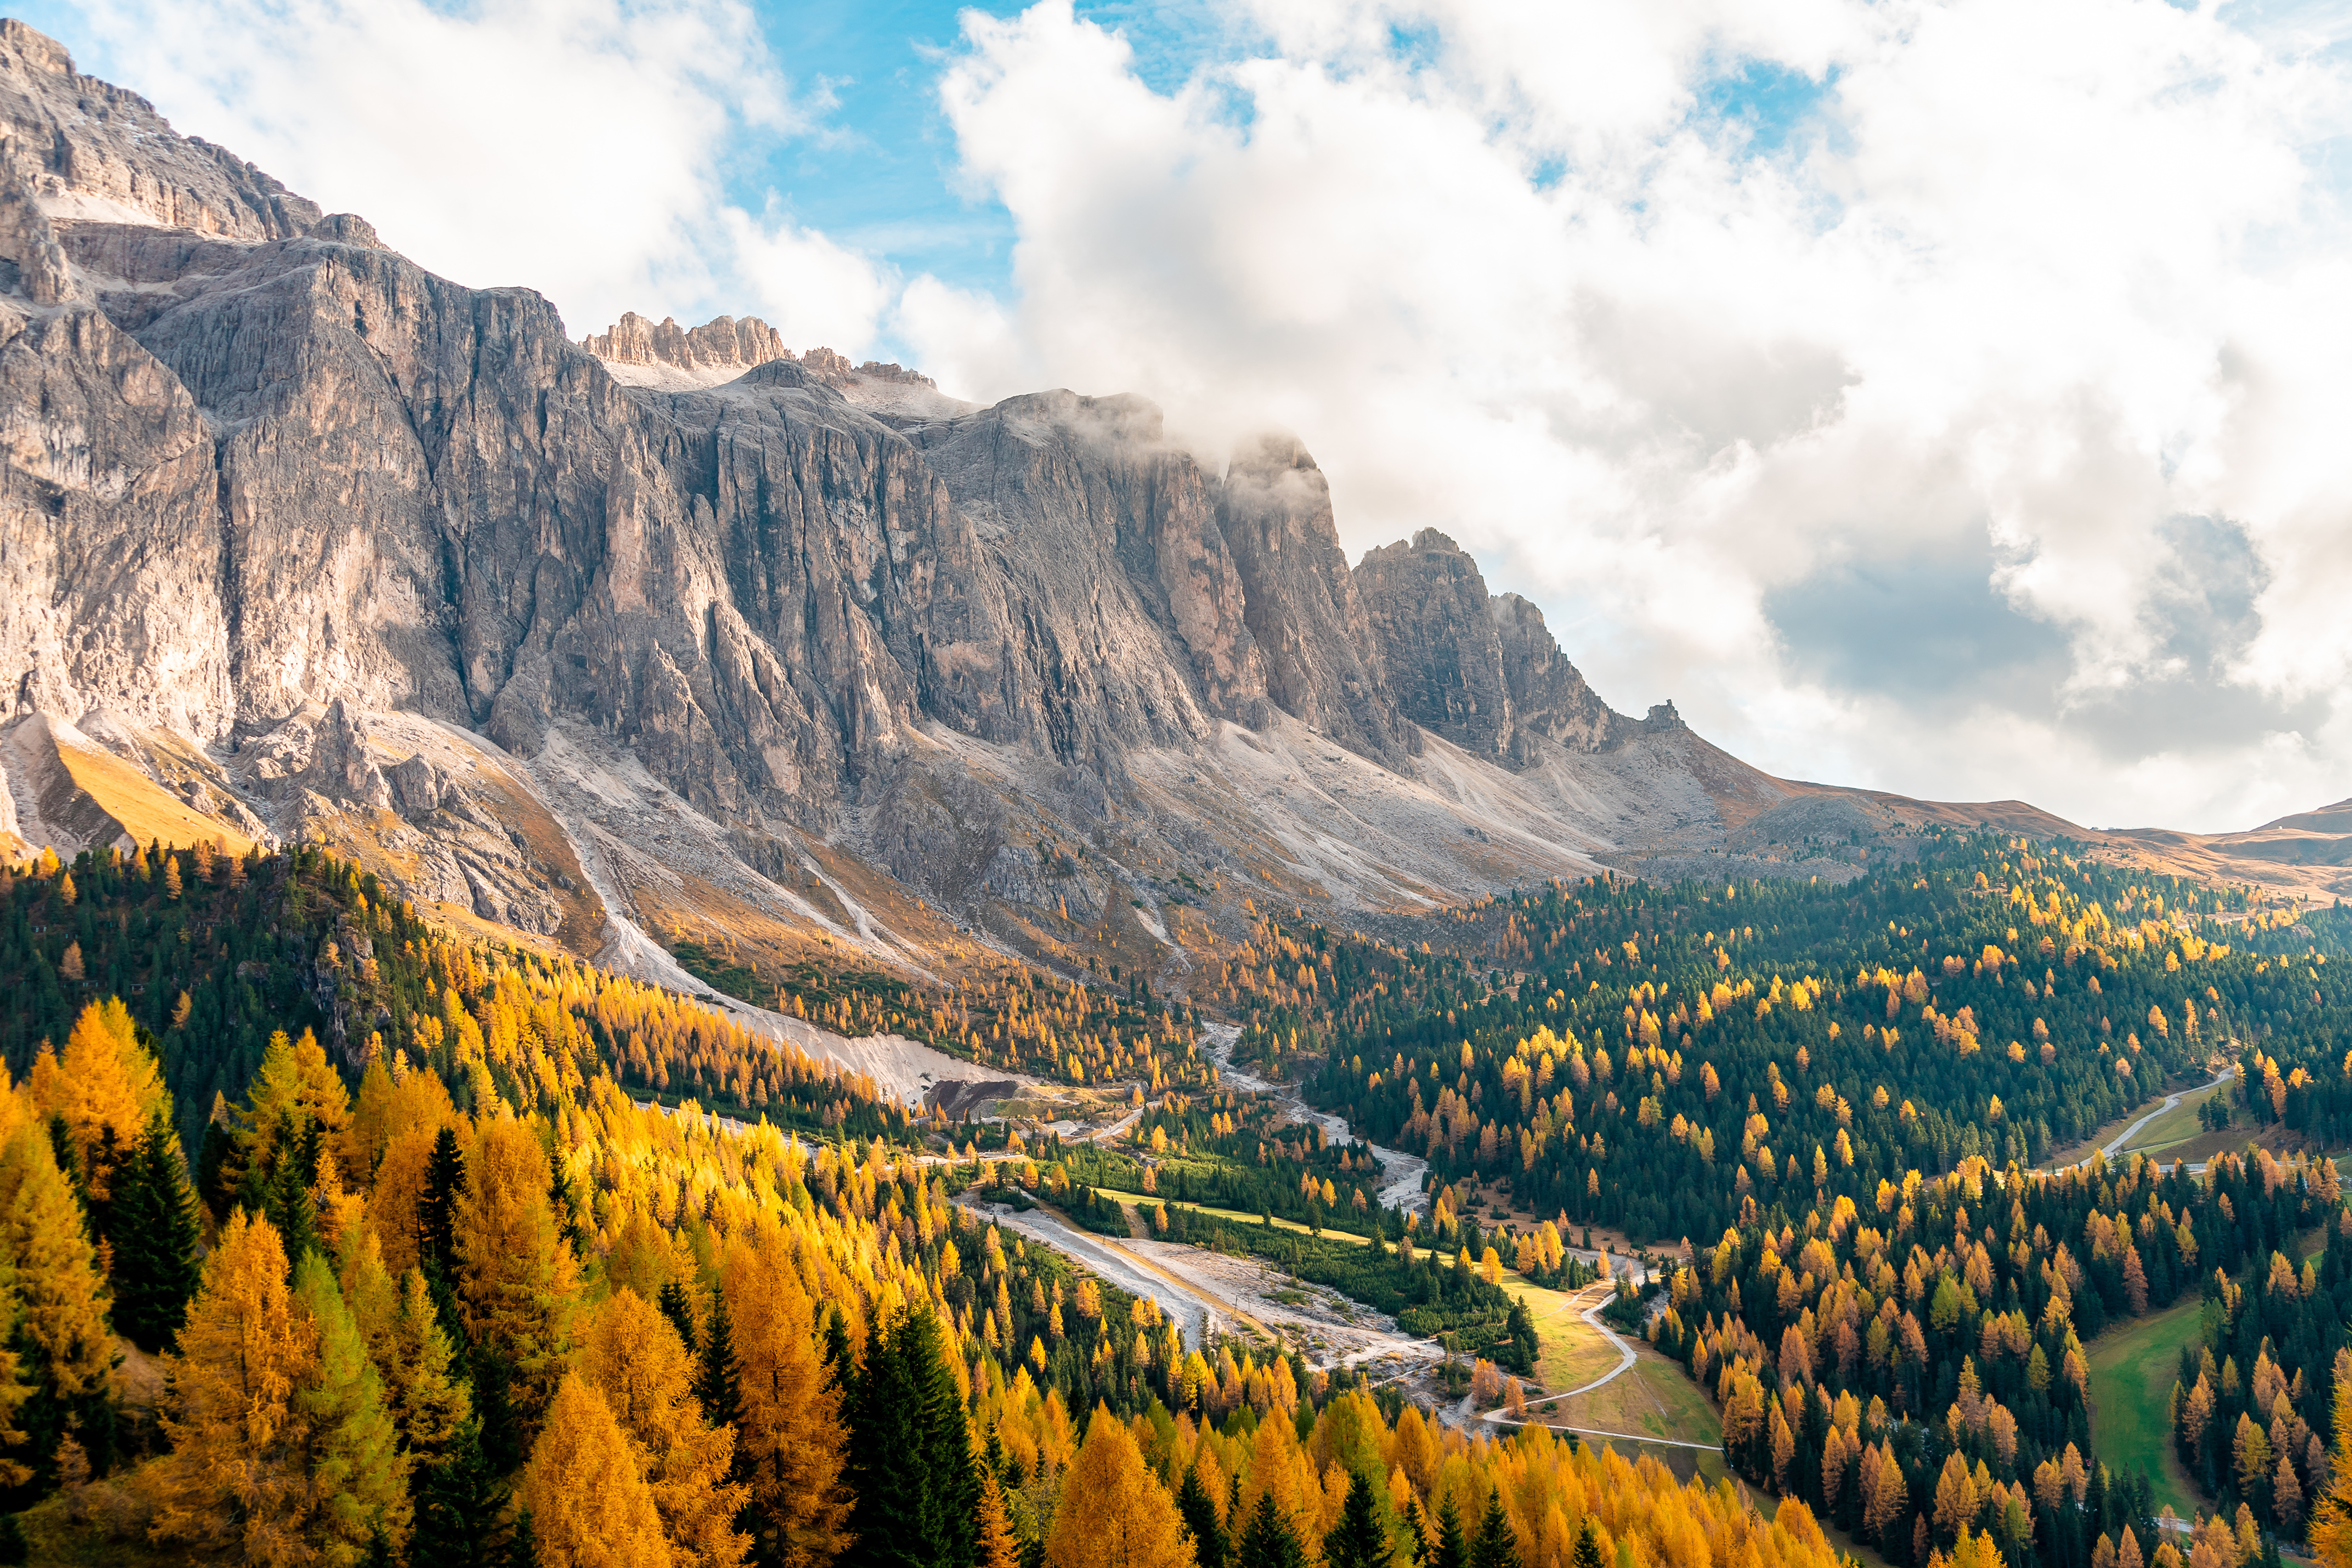 Скачать обои бесплатно Пейзаж, Природа, Осень, Италия, Гора, Лес, Земля/природа, Утёс картинка на рабочий стол ПК